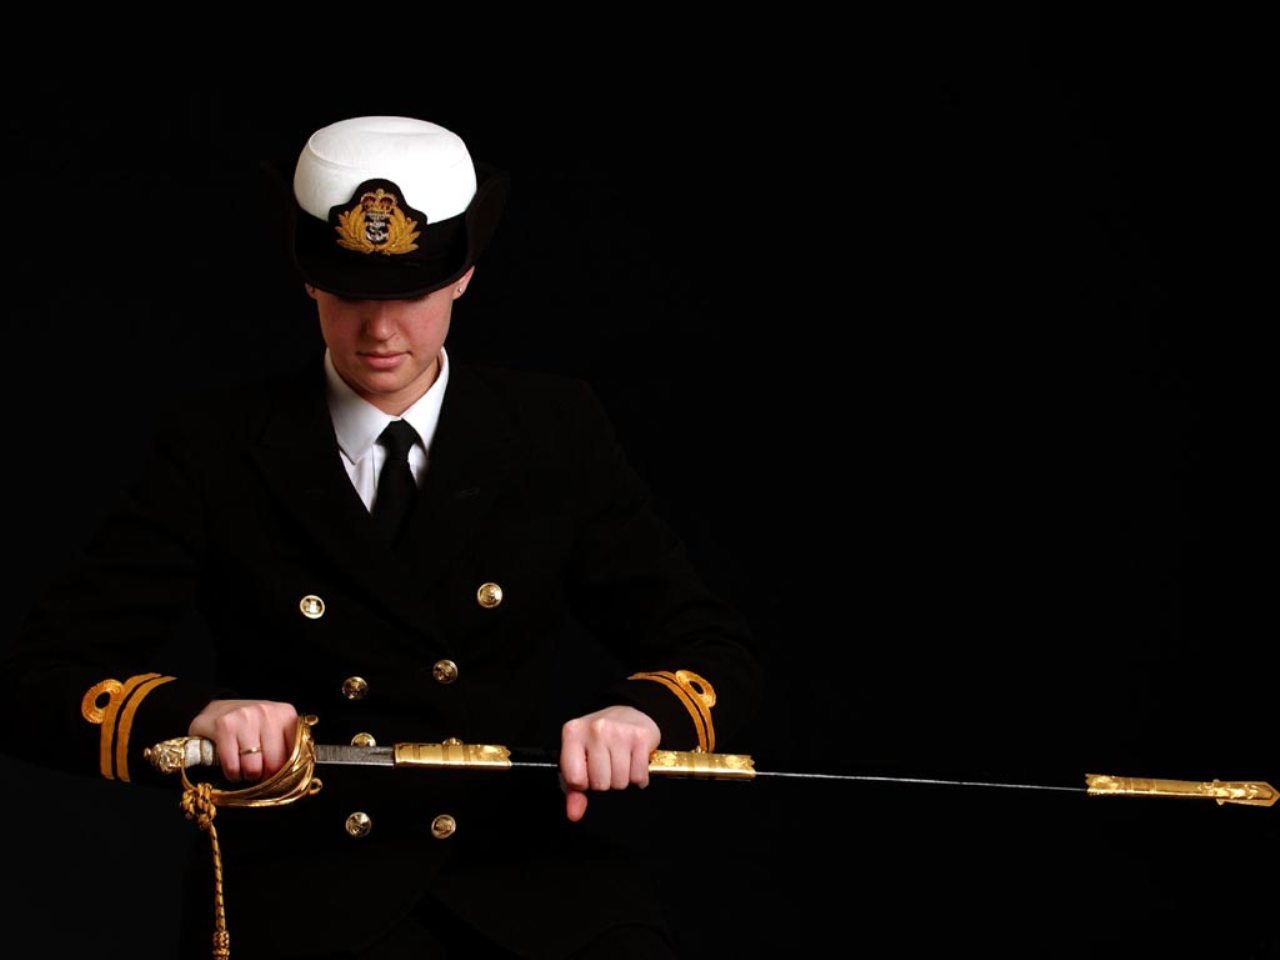 Royal_navy_officer.jpg